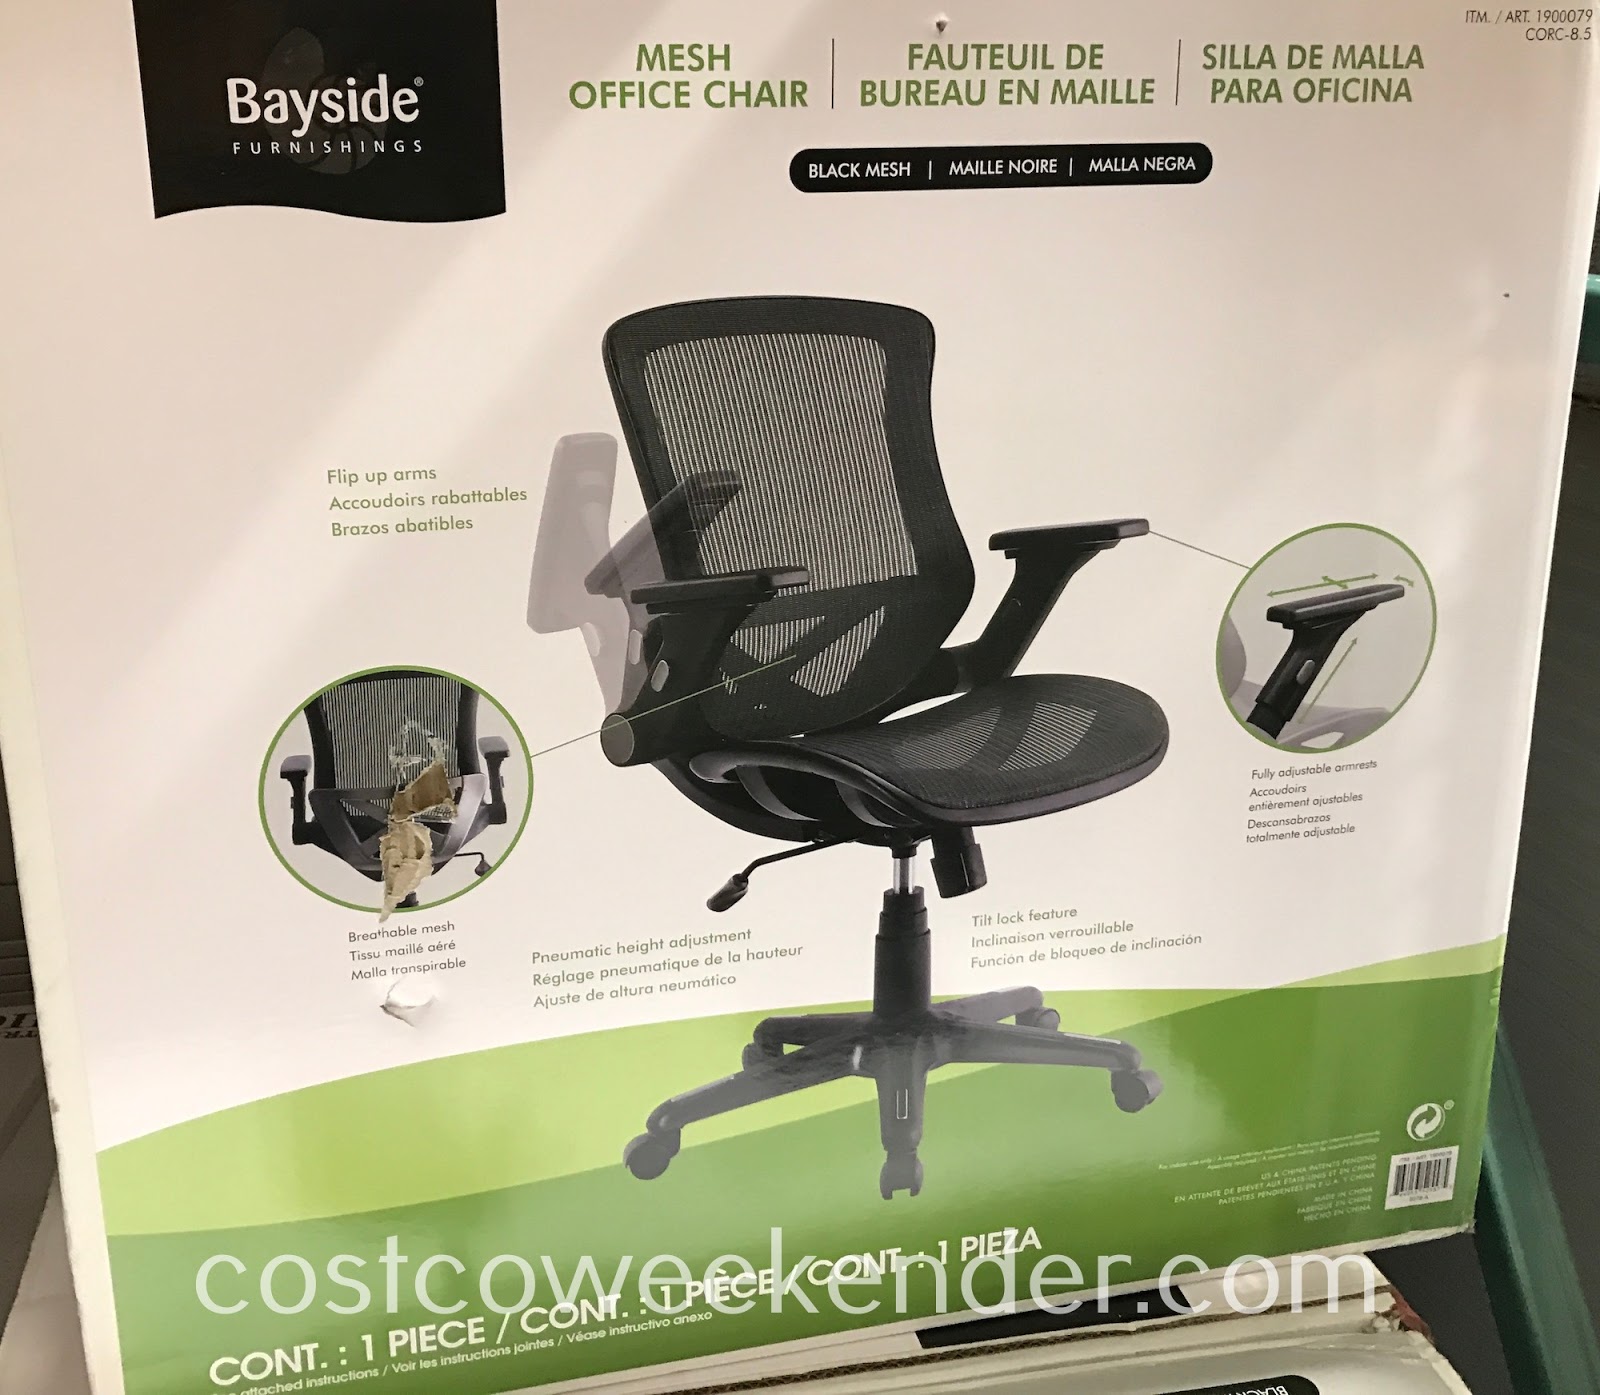 Bayside Furnishings Mesh Office Chair Costco Weekender